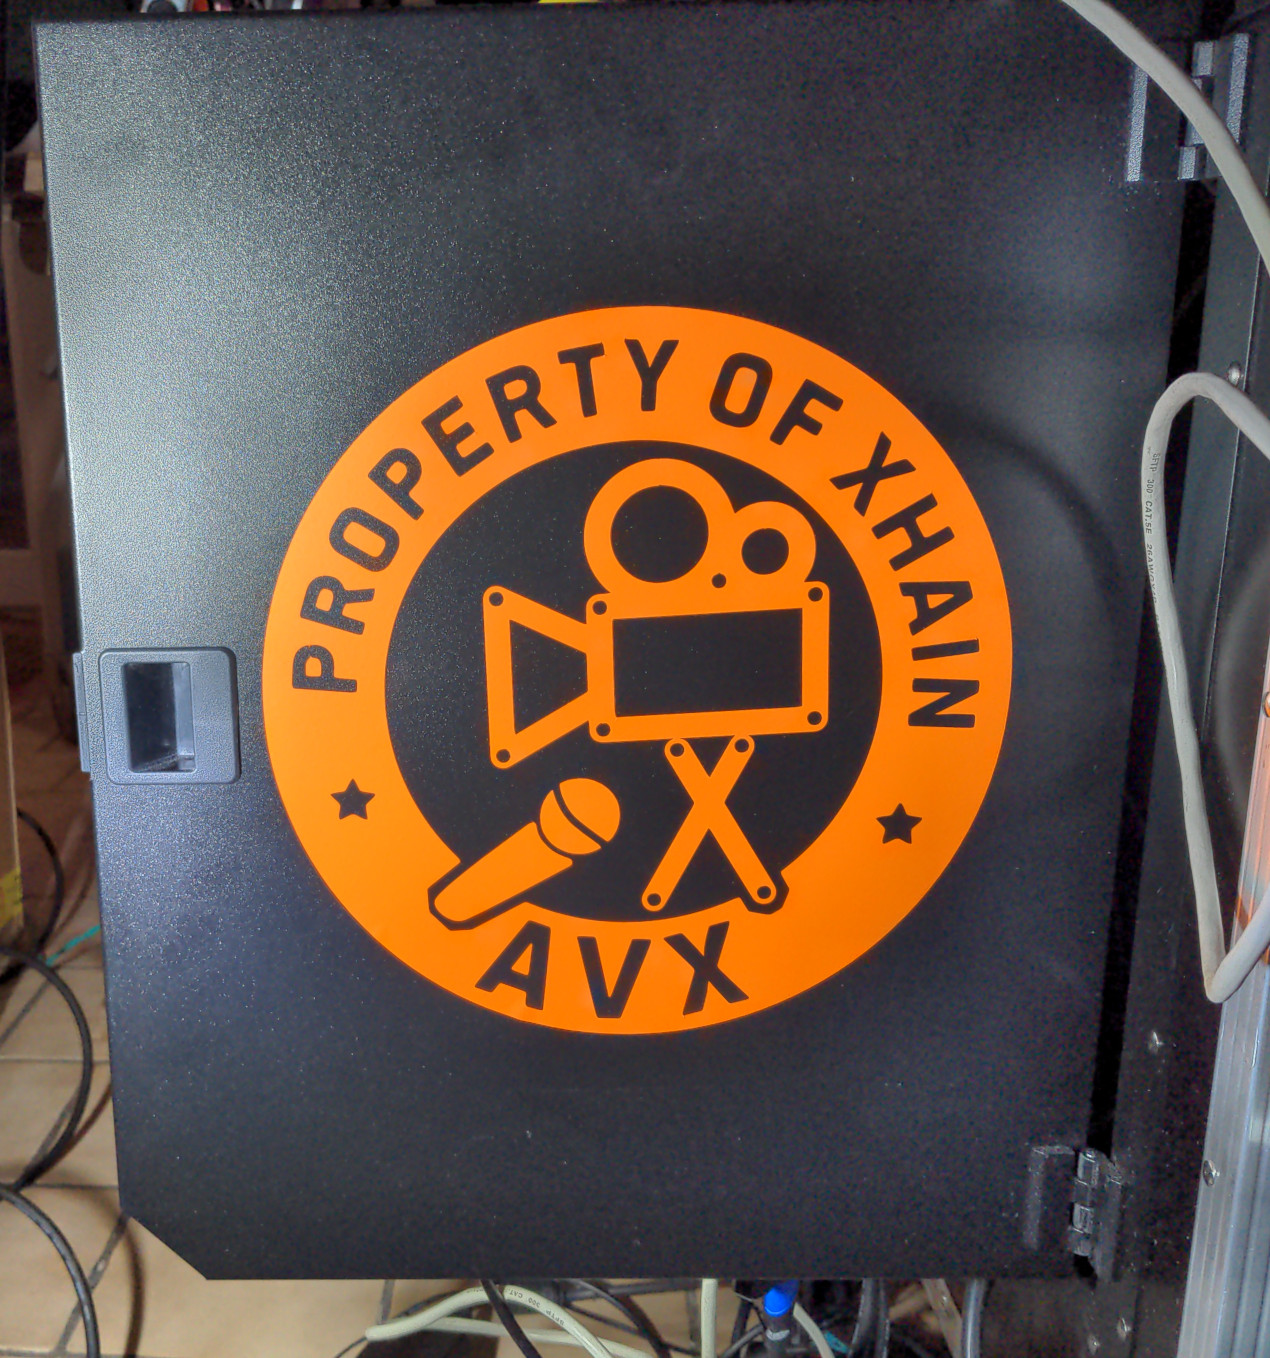 avx-logo.jpg